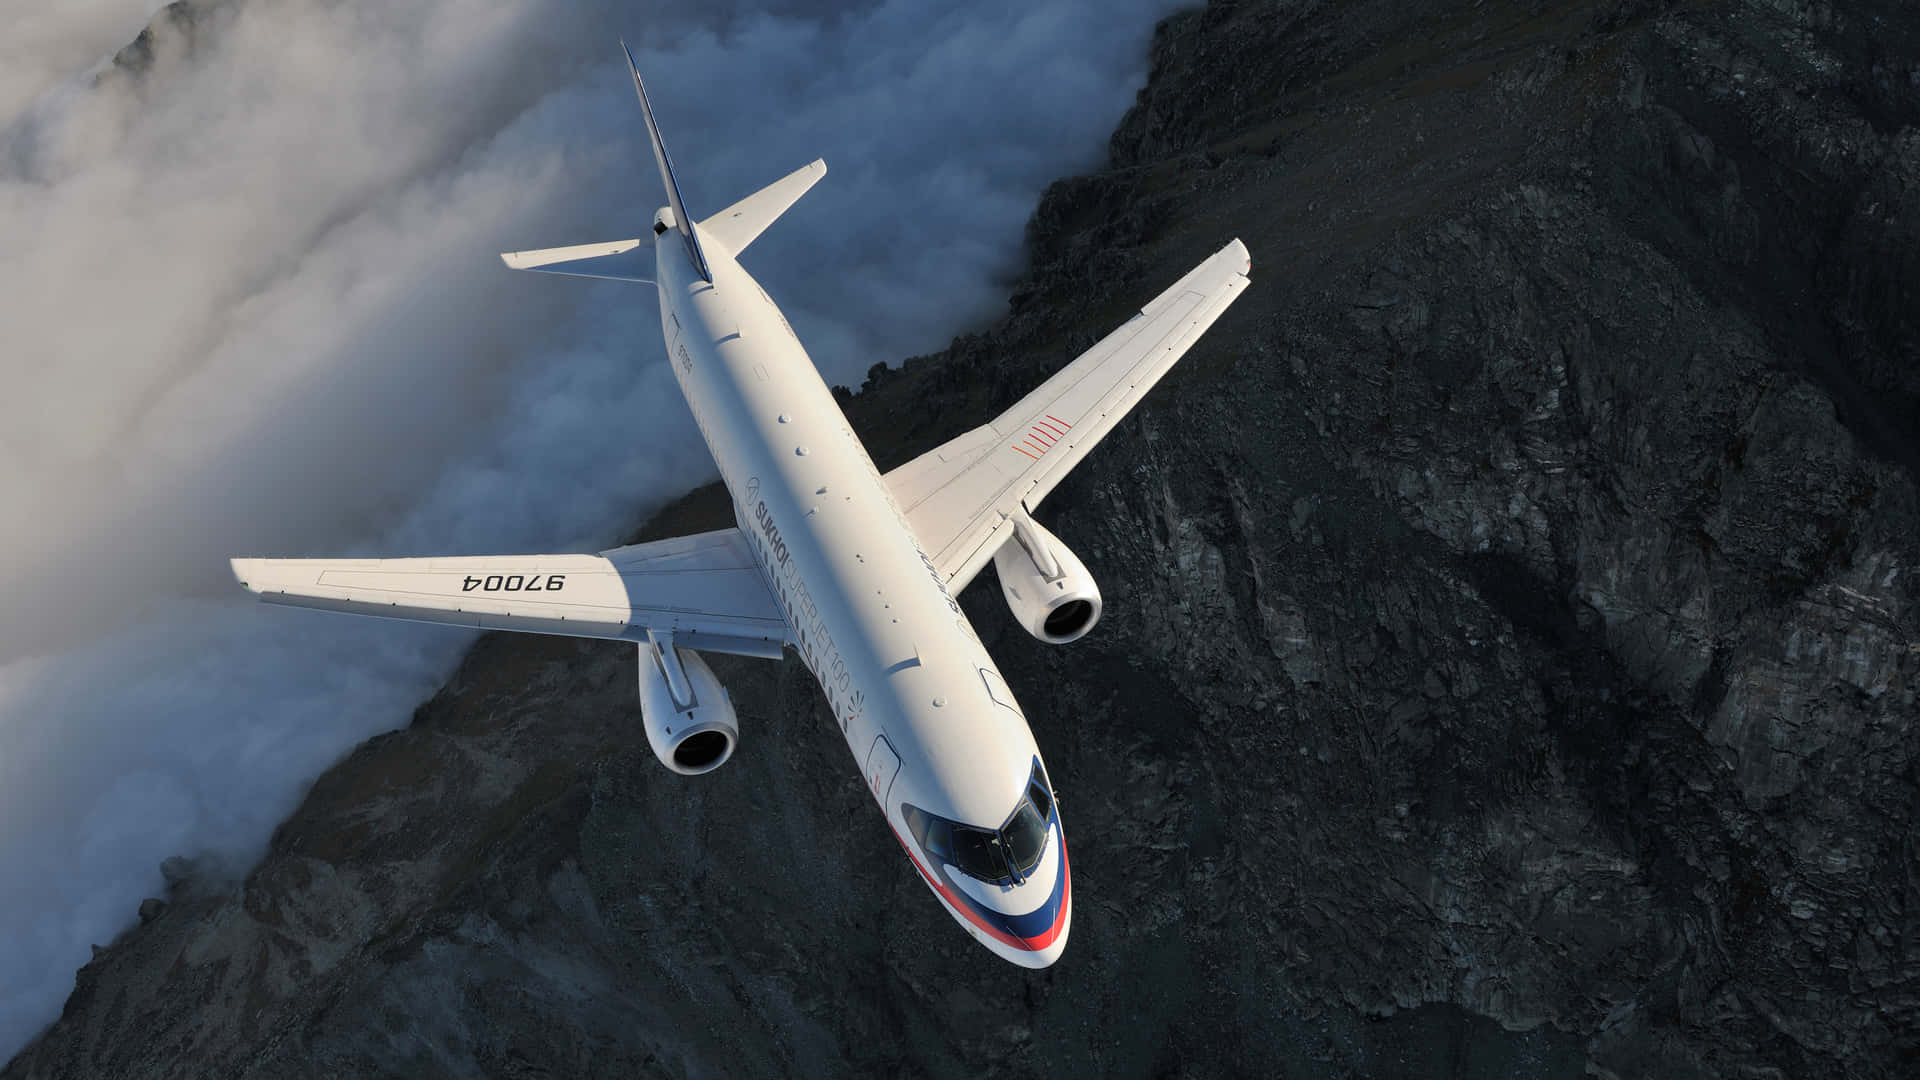 High Above the Clouds - Passenger Aircraft Wallpaper